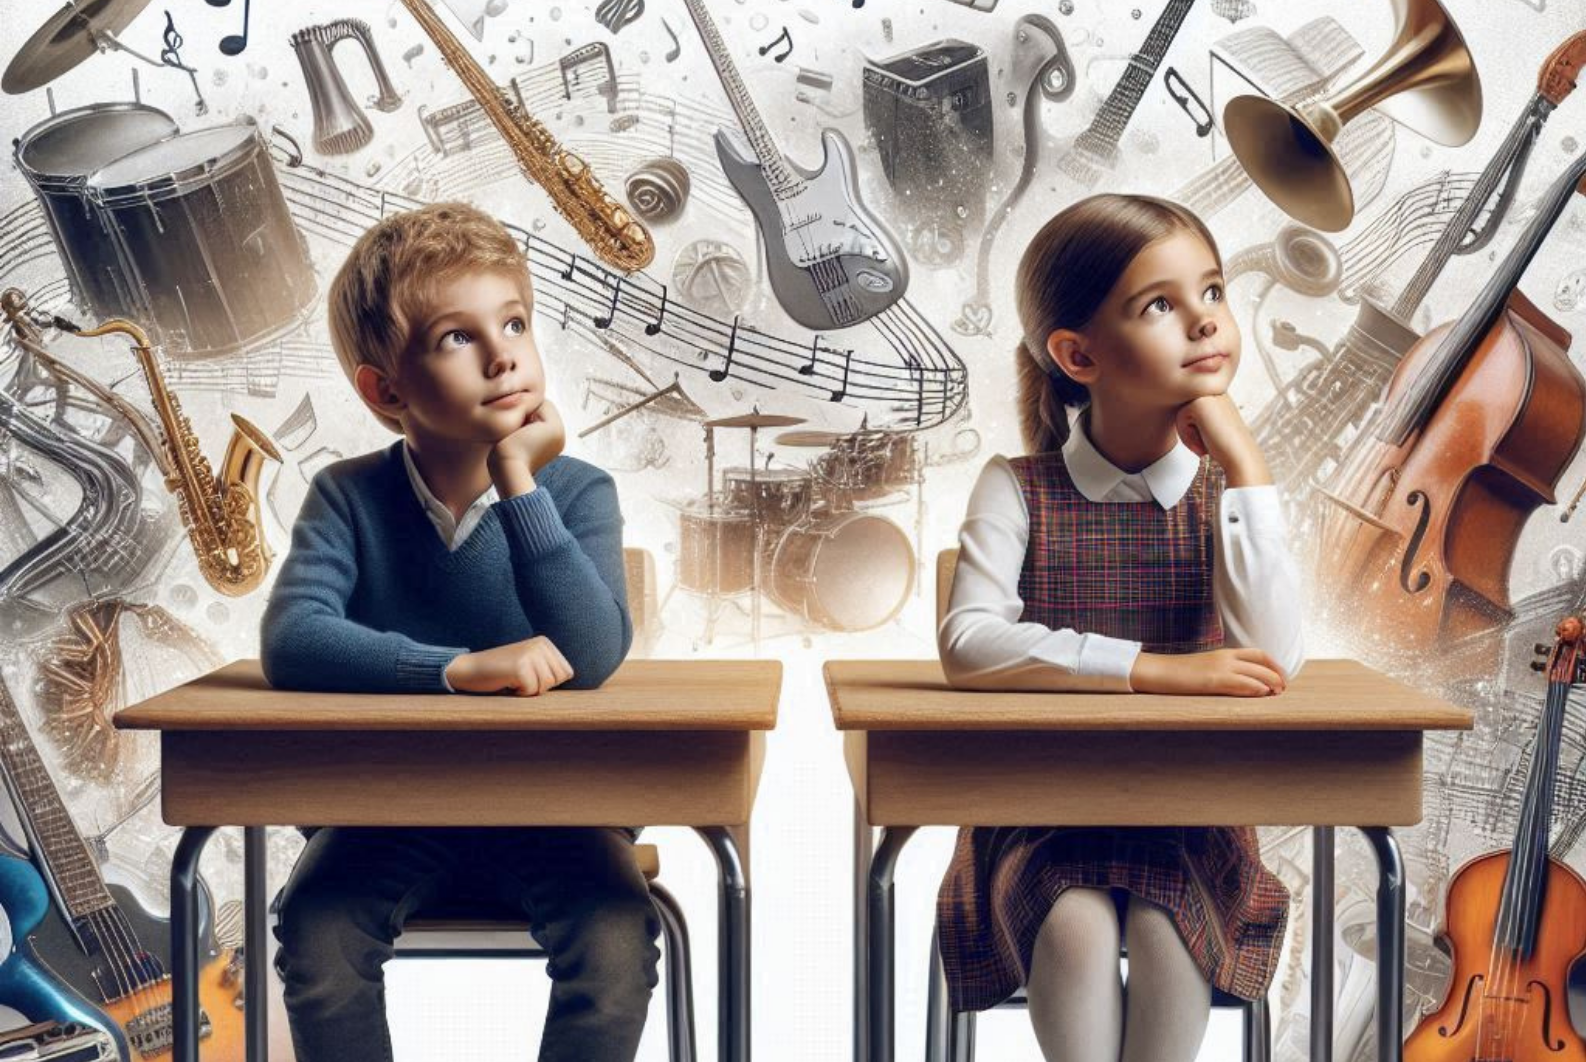 Plakat zawiera informacje na temat Niezwykłych Lekcji Muzyki, które Instytut Edukacji Artystycznej przeprowadzi we wrześniu 2024 - na zdjęciu widać dzieci w ławce, a za nimi w chmurze instrumenty muzyczne